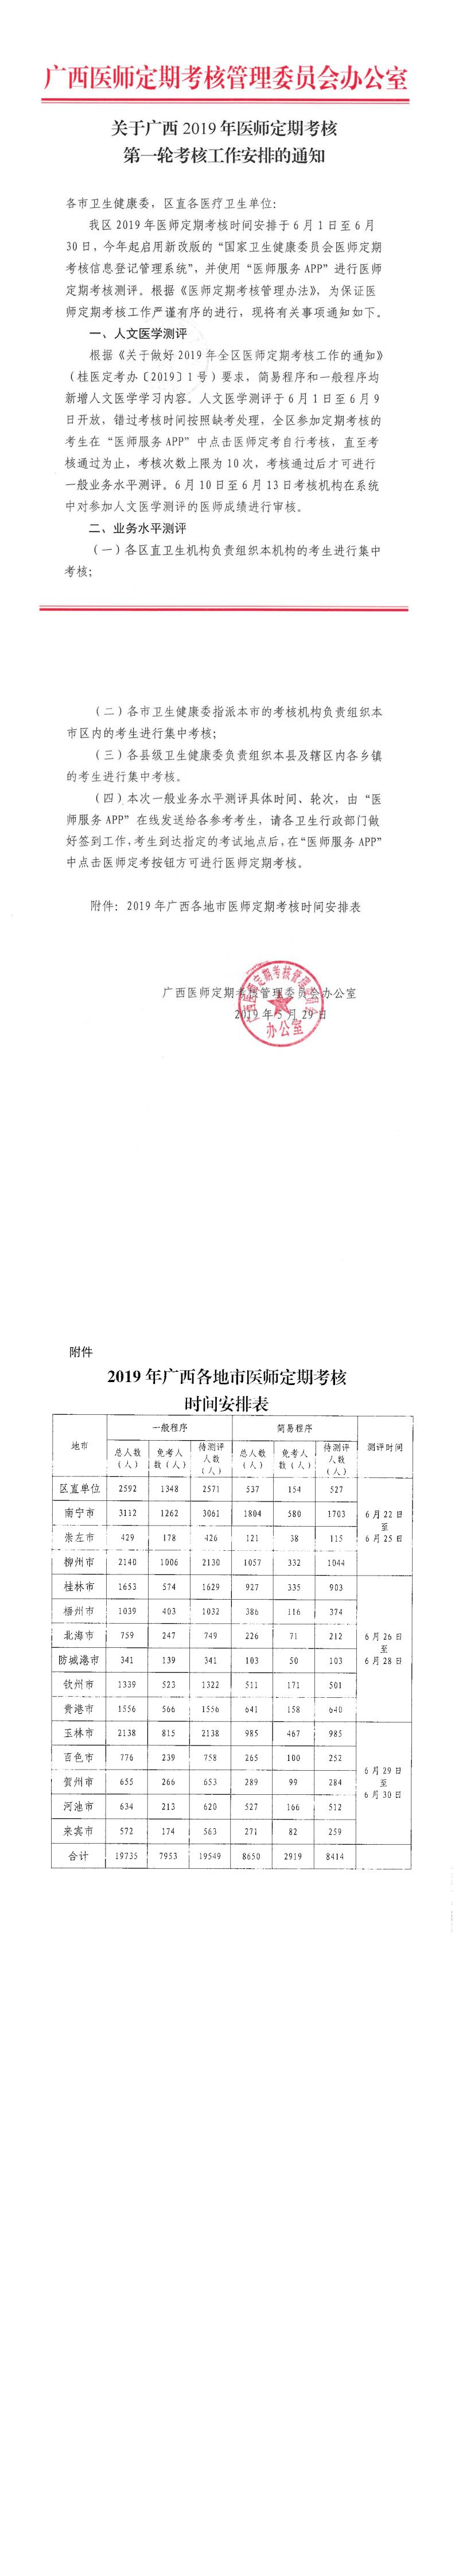 关于广西2019年医师定期考核第一轮考核工作安排的通知_0.jpg